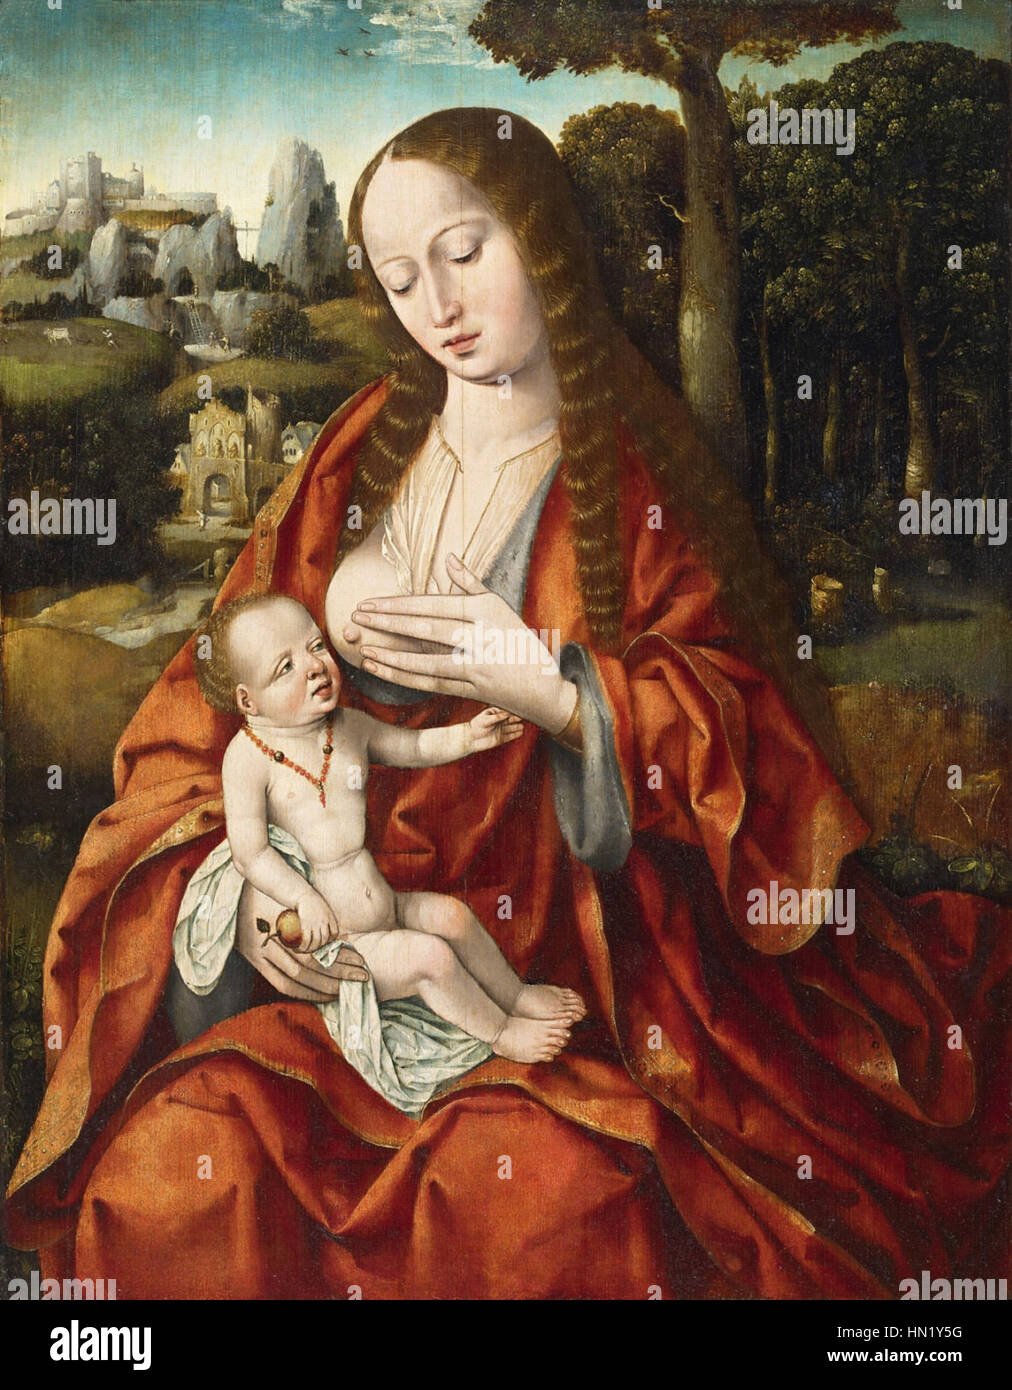 Meister des Heiligen Blutes Madonna mit Kind Stock Photo